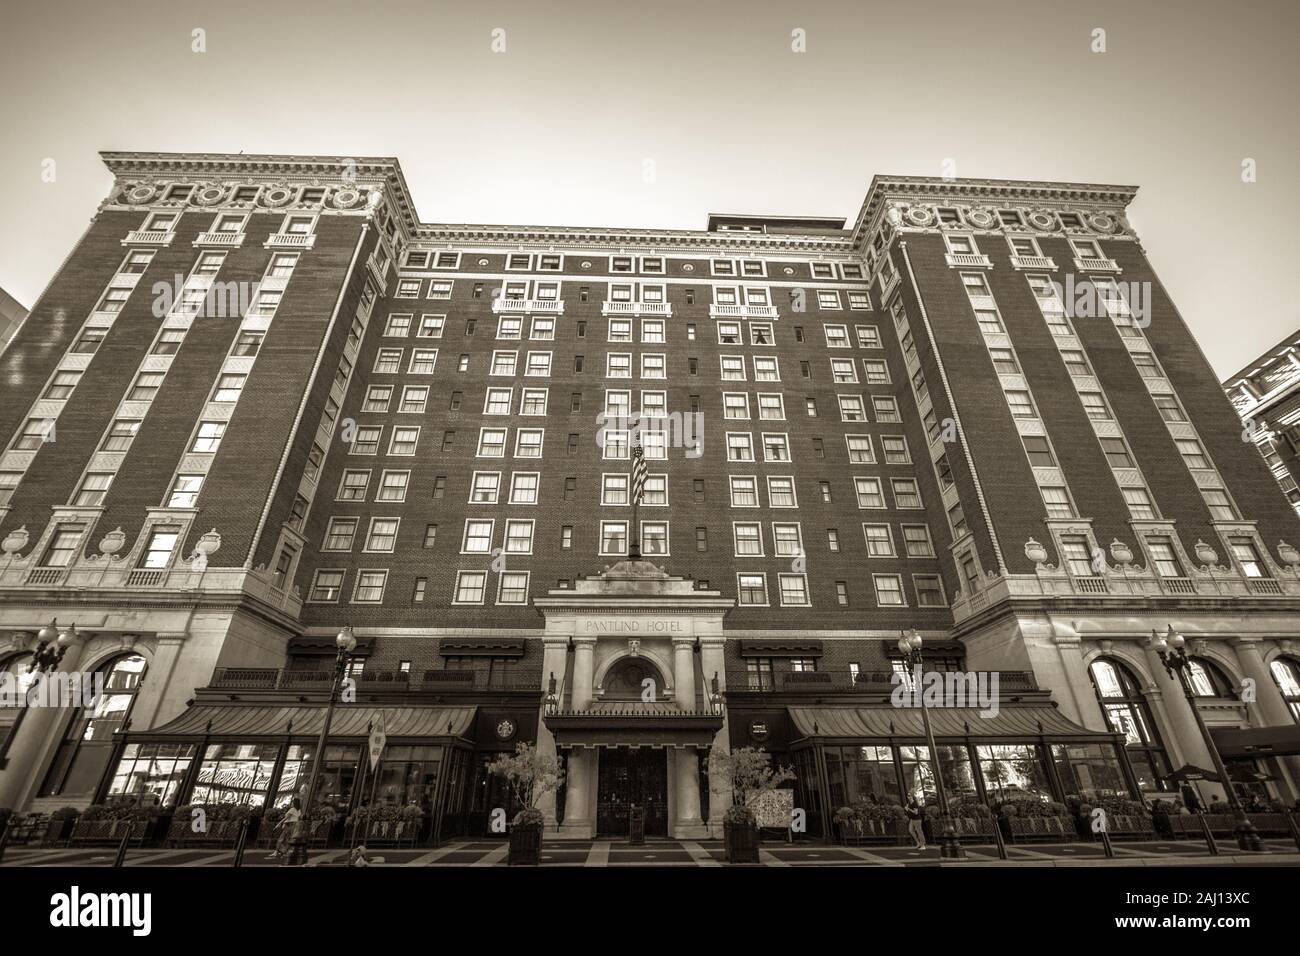 Grand Rapids, Michigan, USA - 17 septembre 2016 : l'historique Amway Grand Plaza Hotel est un luxueux hôtel quatre étoiles appartenant à la chaîne hôtelière Hilton. Banque D'Images